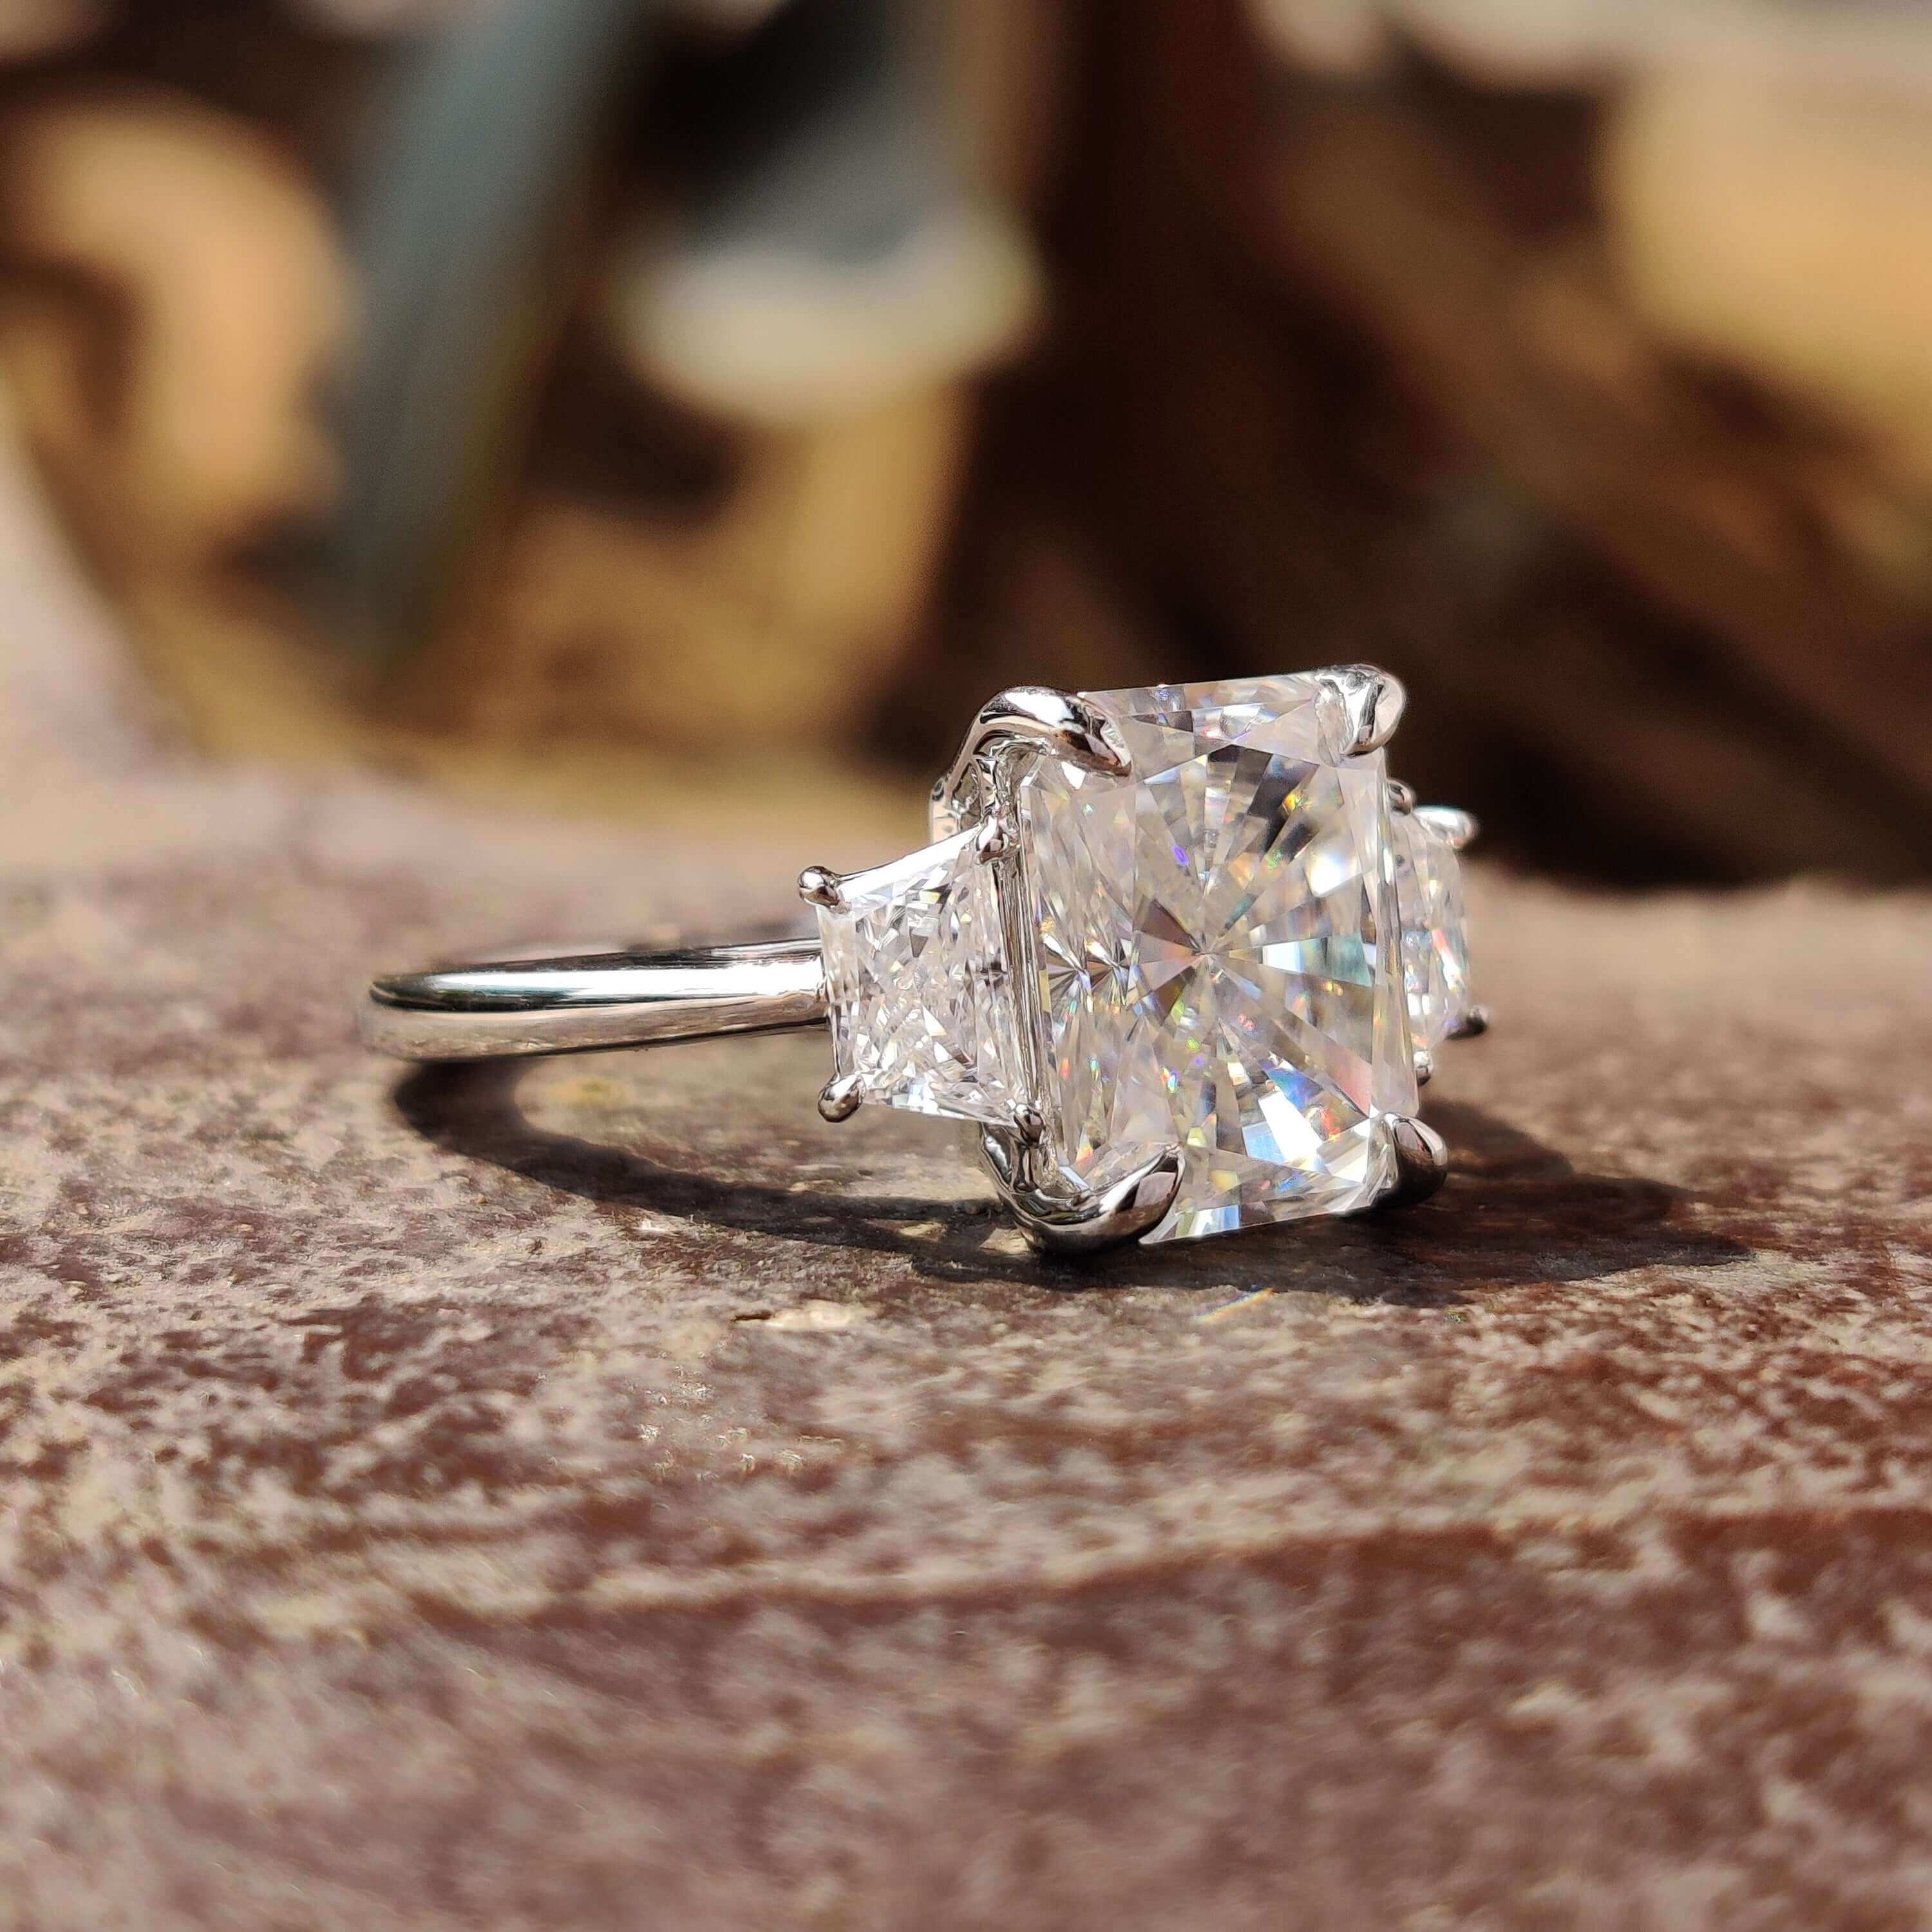 three stone engagement ring - diamondrensu